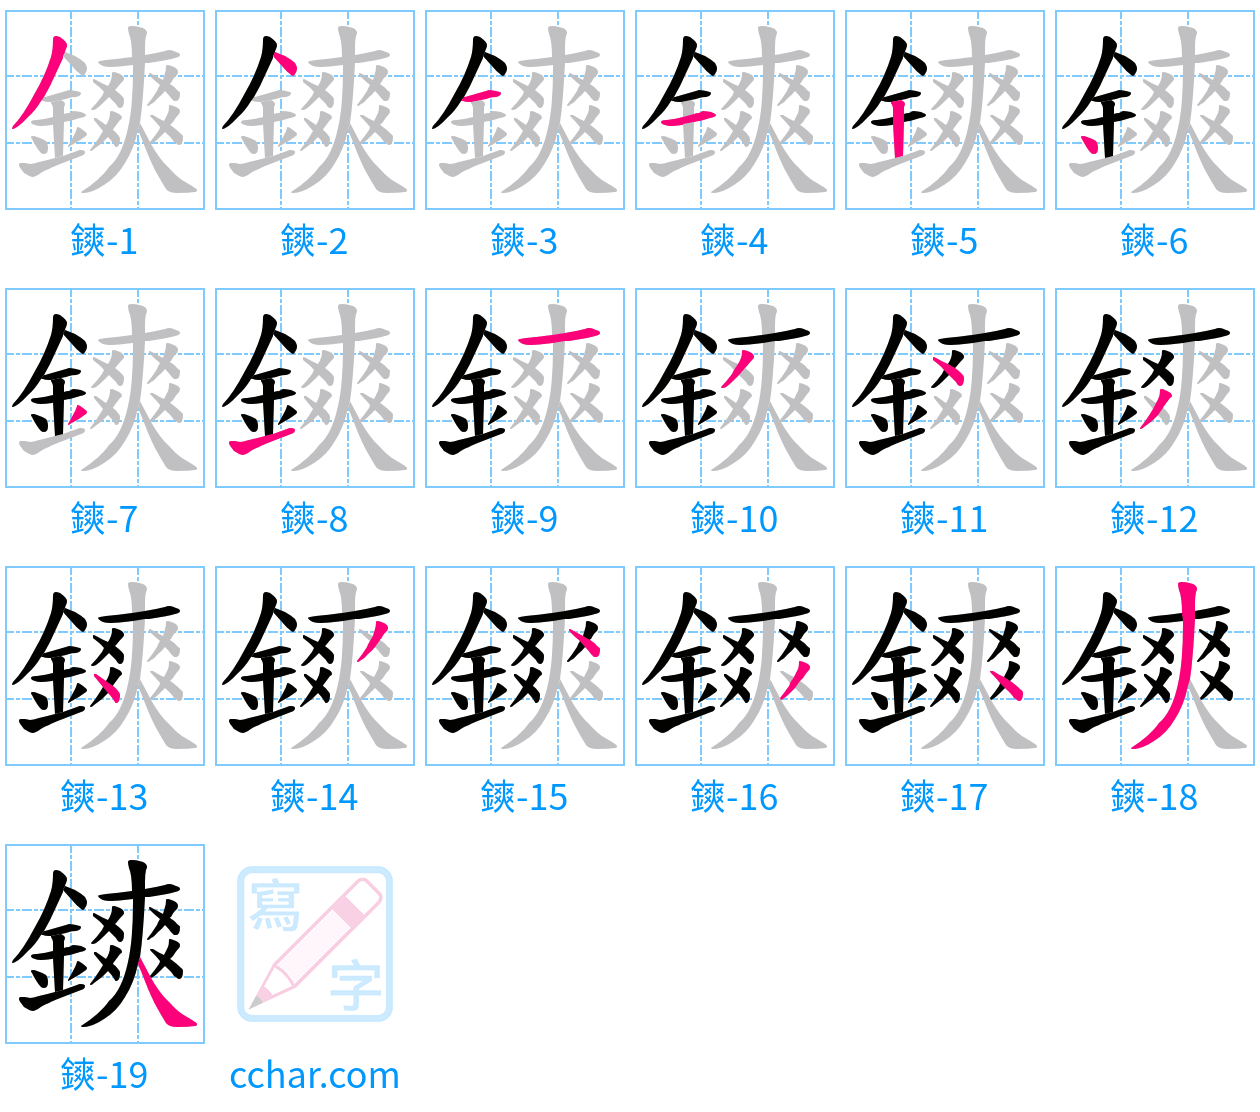 鏯 stroke order step-by-step diagram